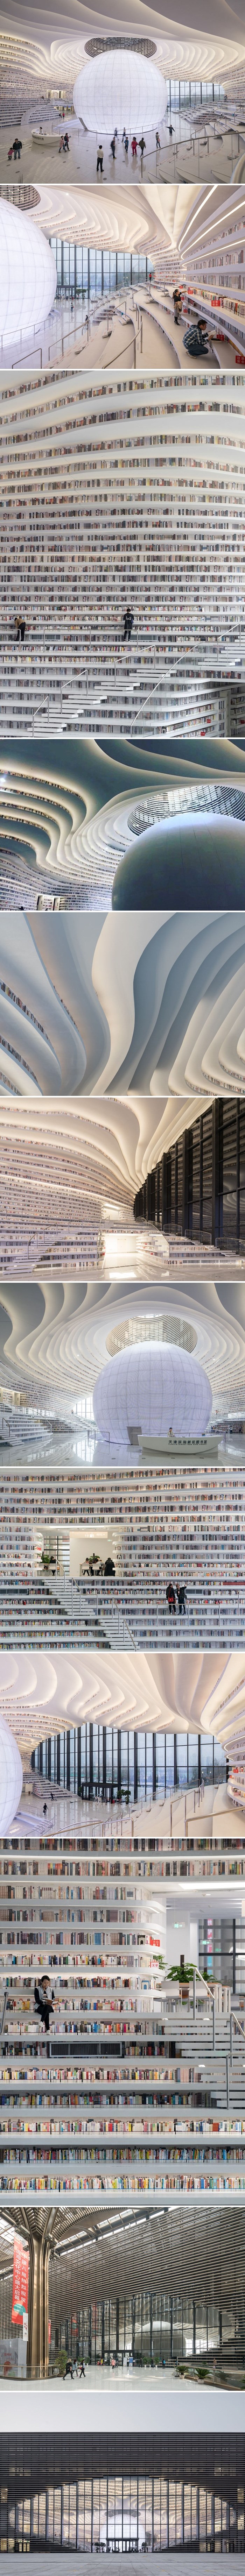 Kina je otvorila vrata knjižnice s preko milijun knjiga, unutrašnjost će vam oduzeti dah